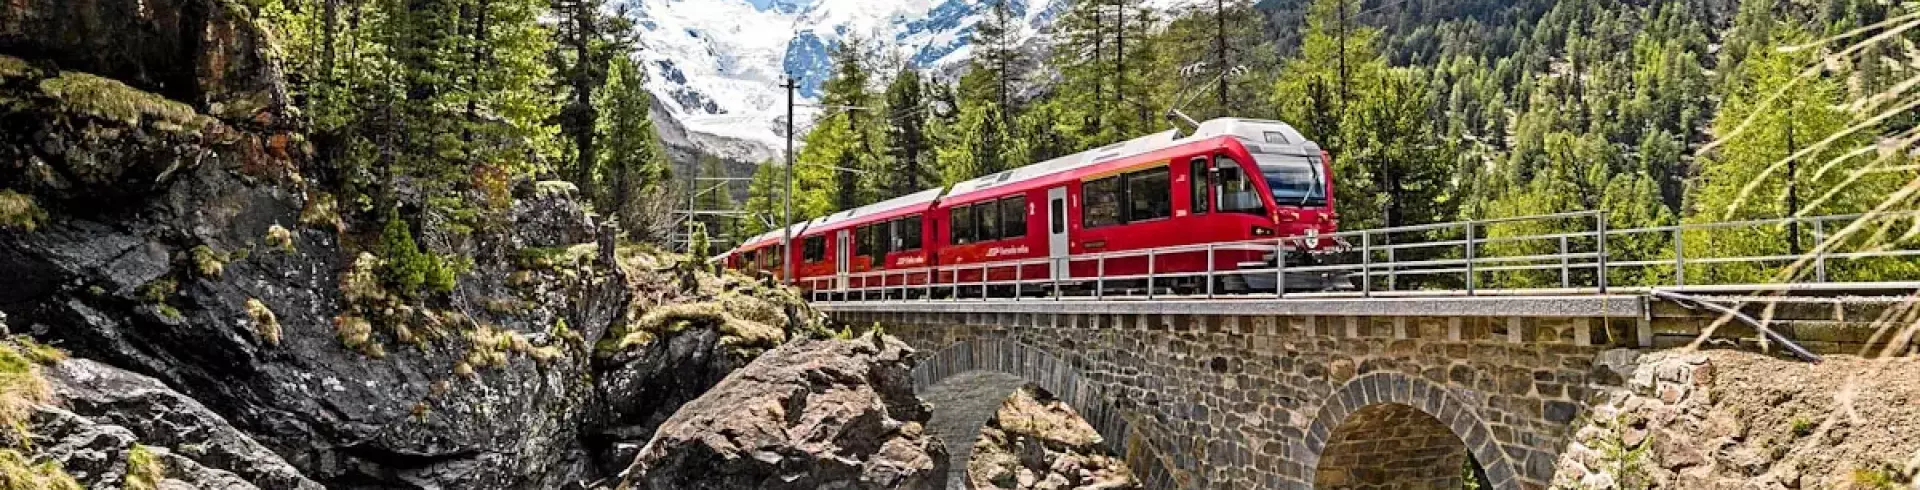 Szwajcaria i czerwony pociąg